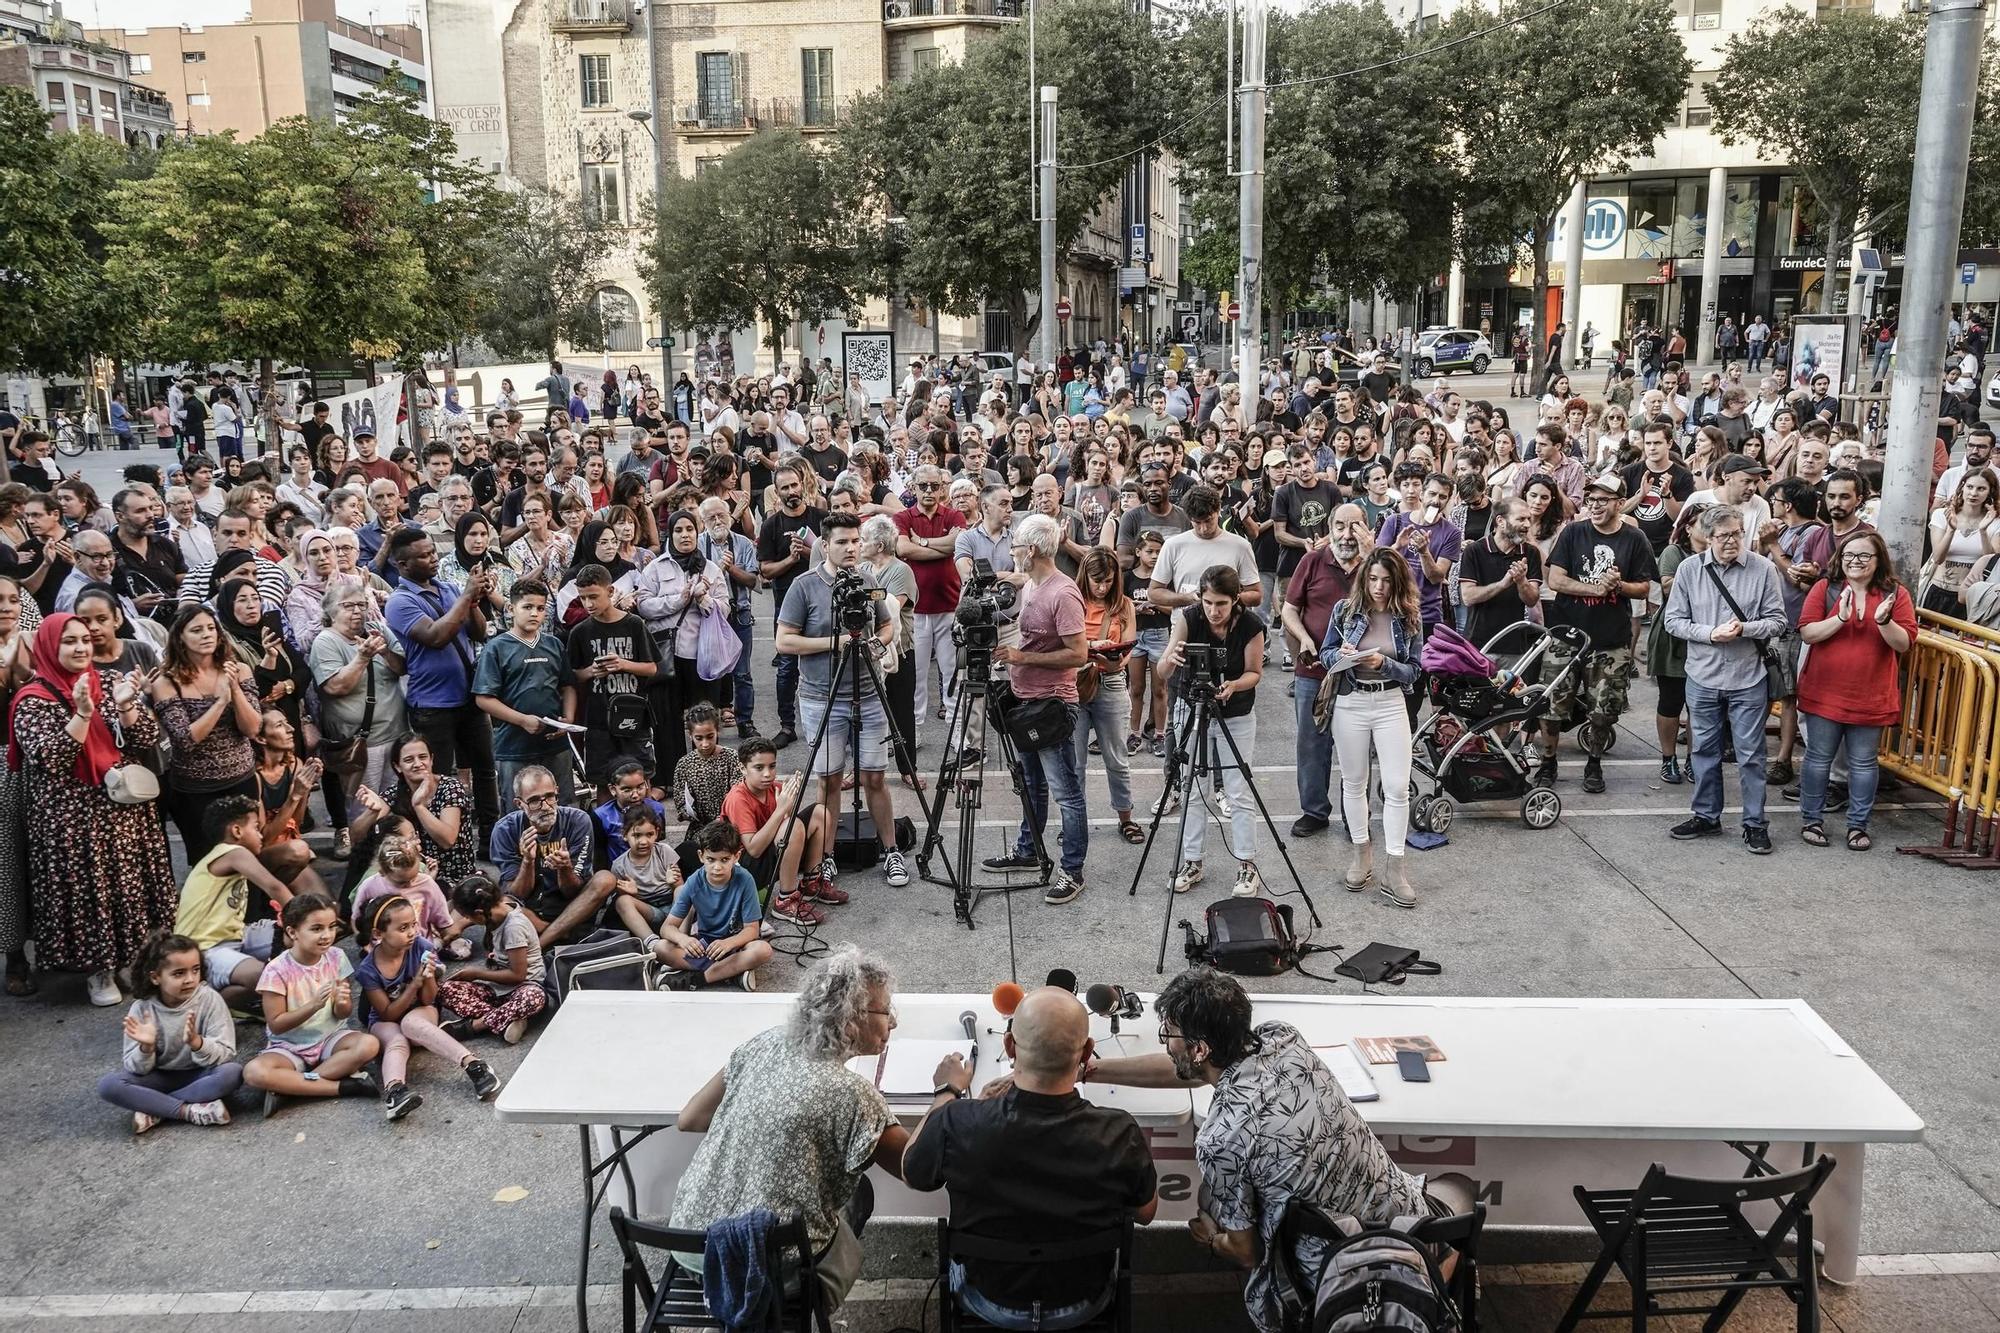 Concentració en contra del racisme a Manresa, en imatges